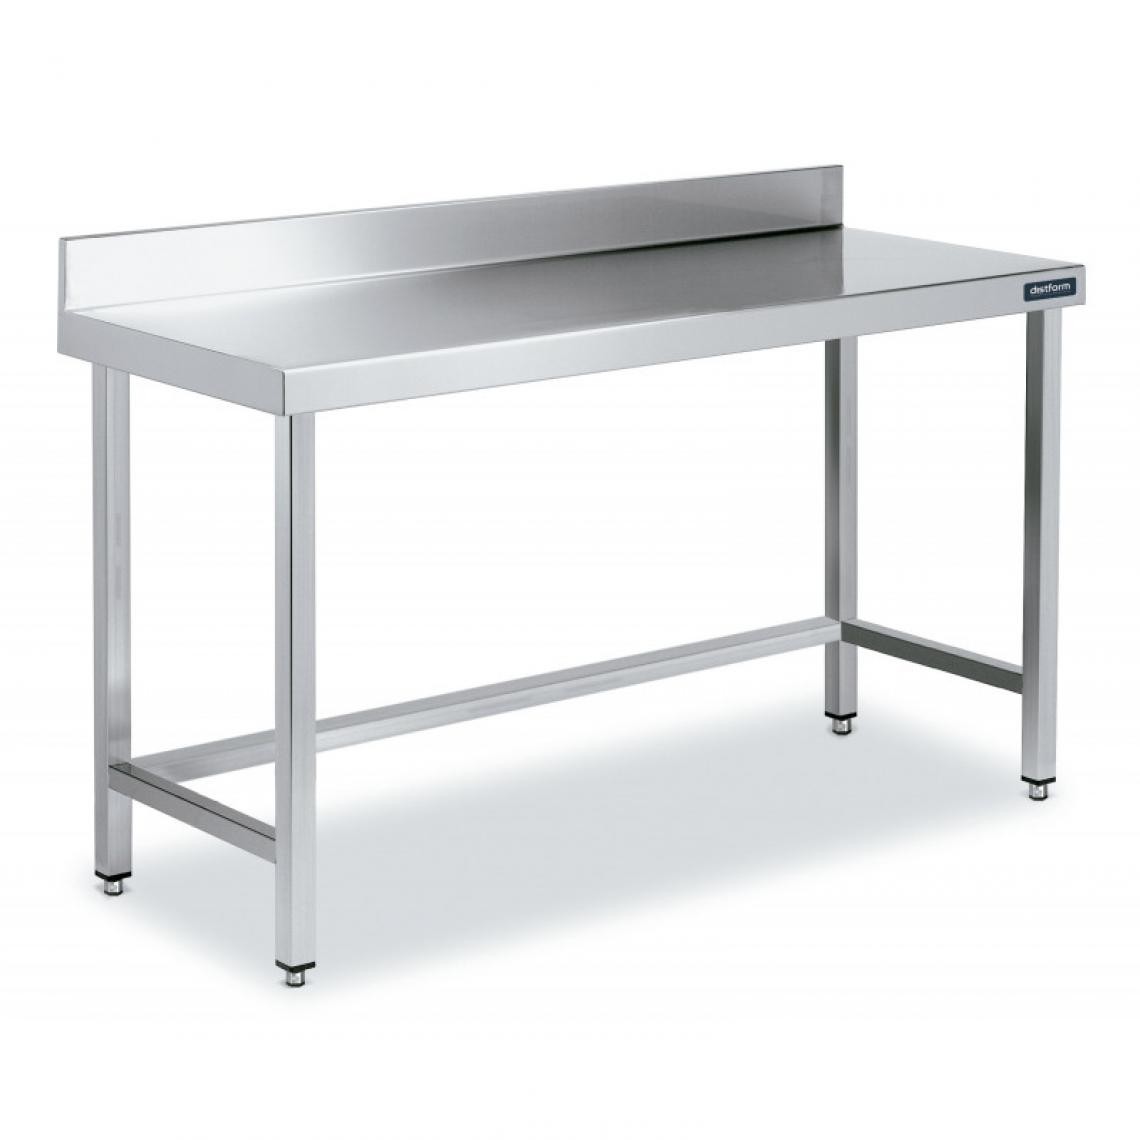 DISTFORM - Table Adossée en Inox avec Renforts Profondeur 600 mm - Distform - Acier inoxydable1900x600 - Tables à manger